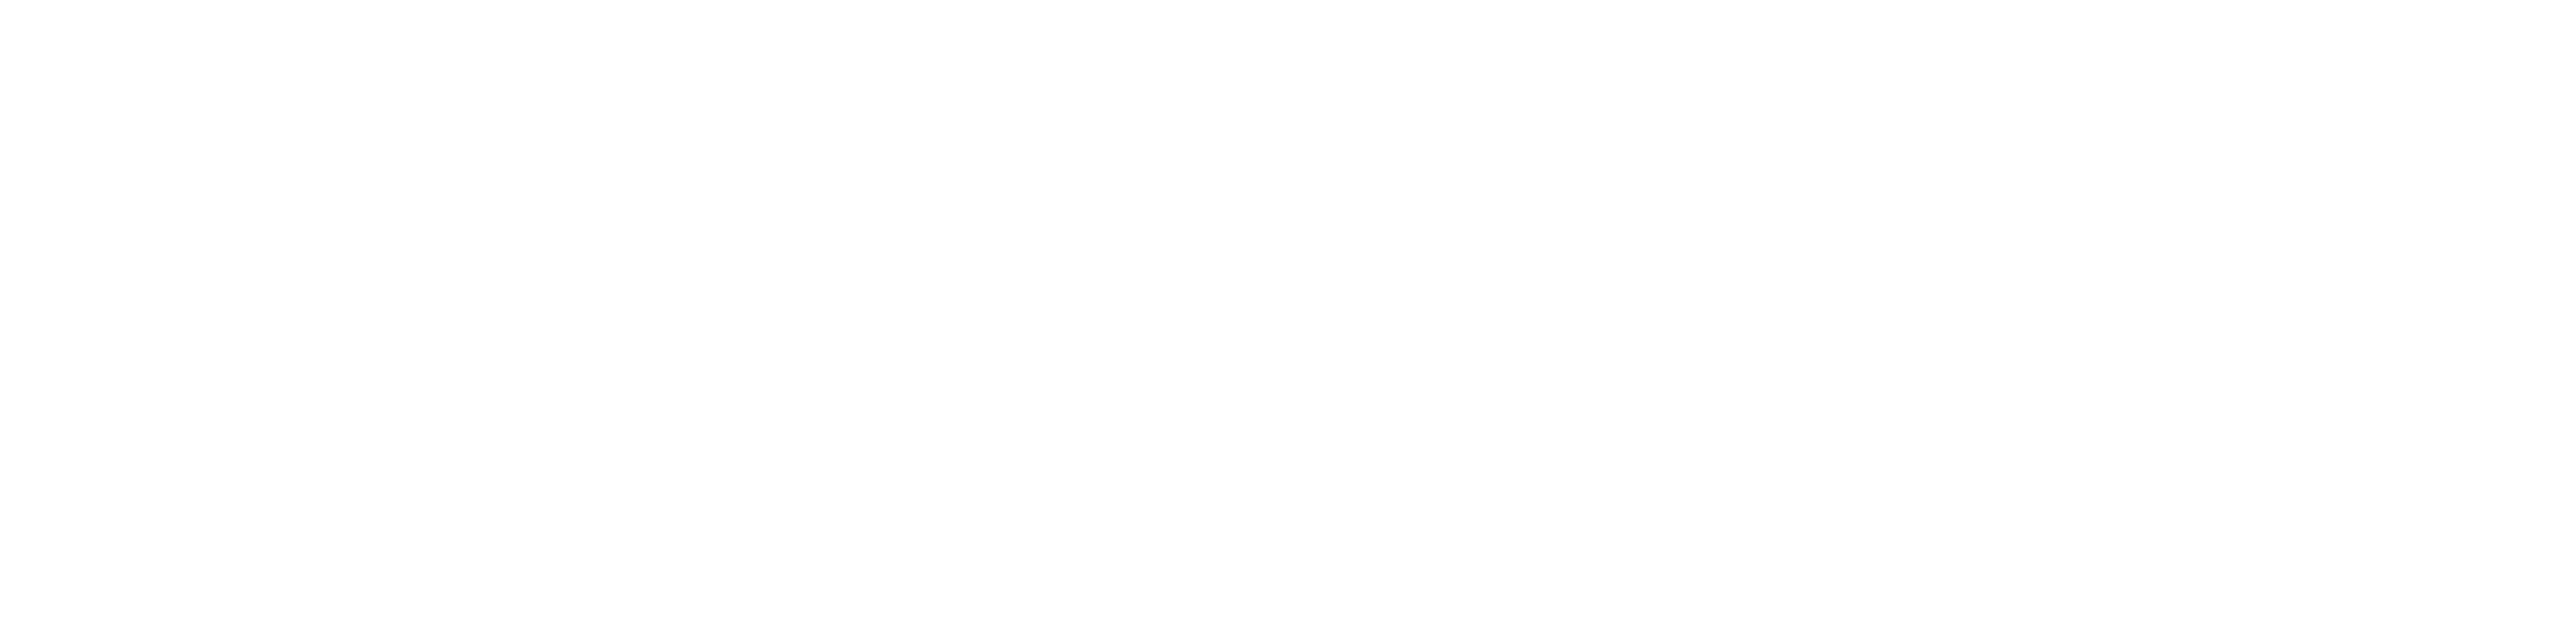 Vetter Law Offices logo